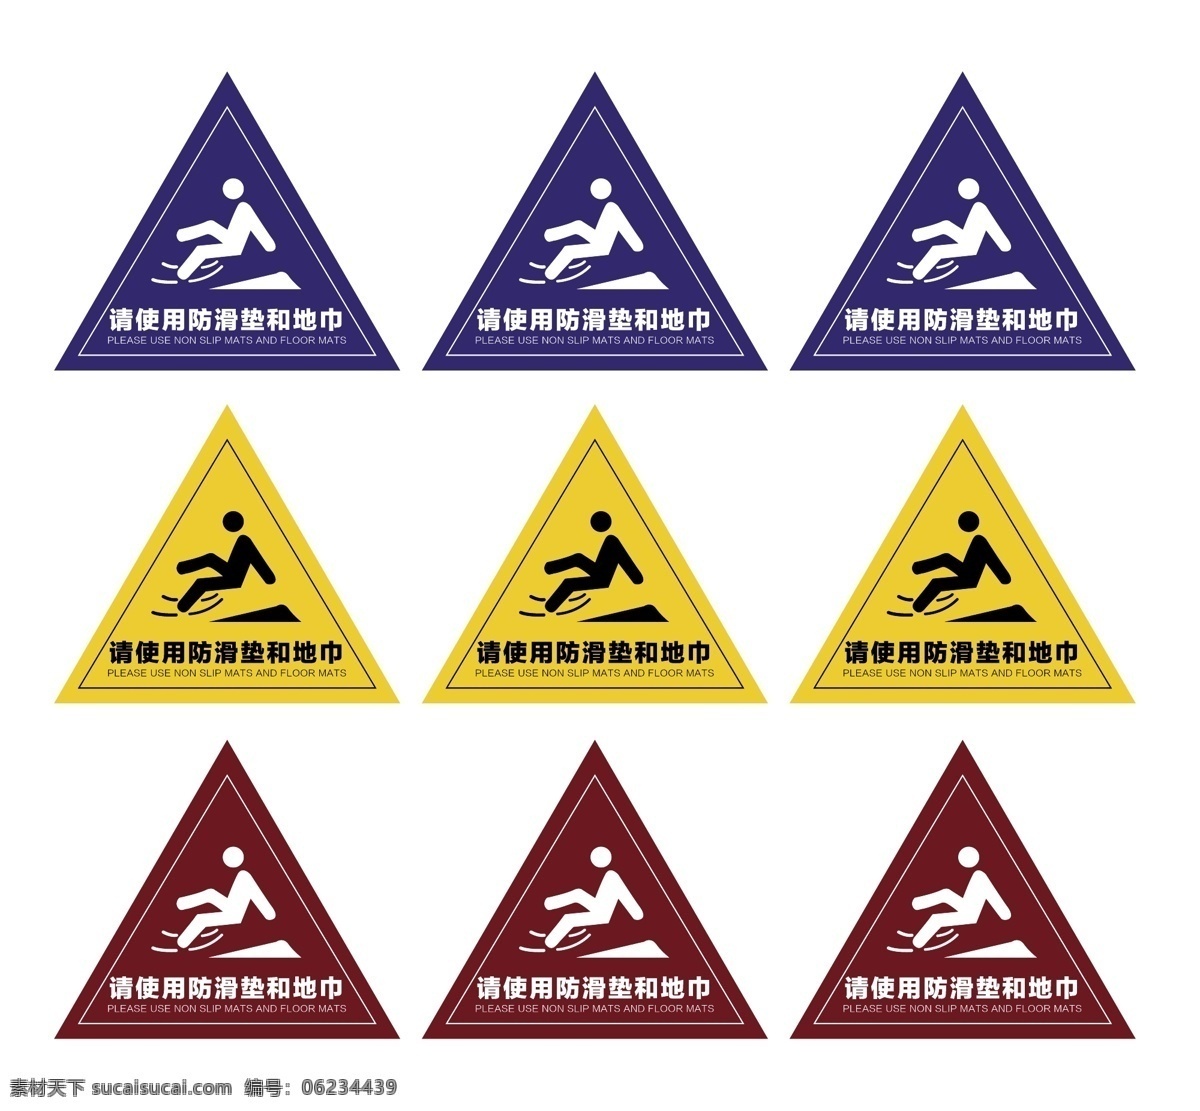 小心地滑图片 小心地滑标志 防滑 防滑标志 注意防滑 小心地滑 防滑贴 温馨提示 安全提示 车贴 滑倒 标识 标志 标志图标 公共标识标志